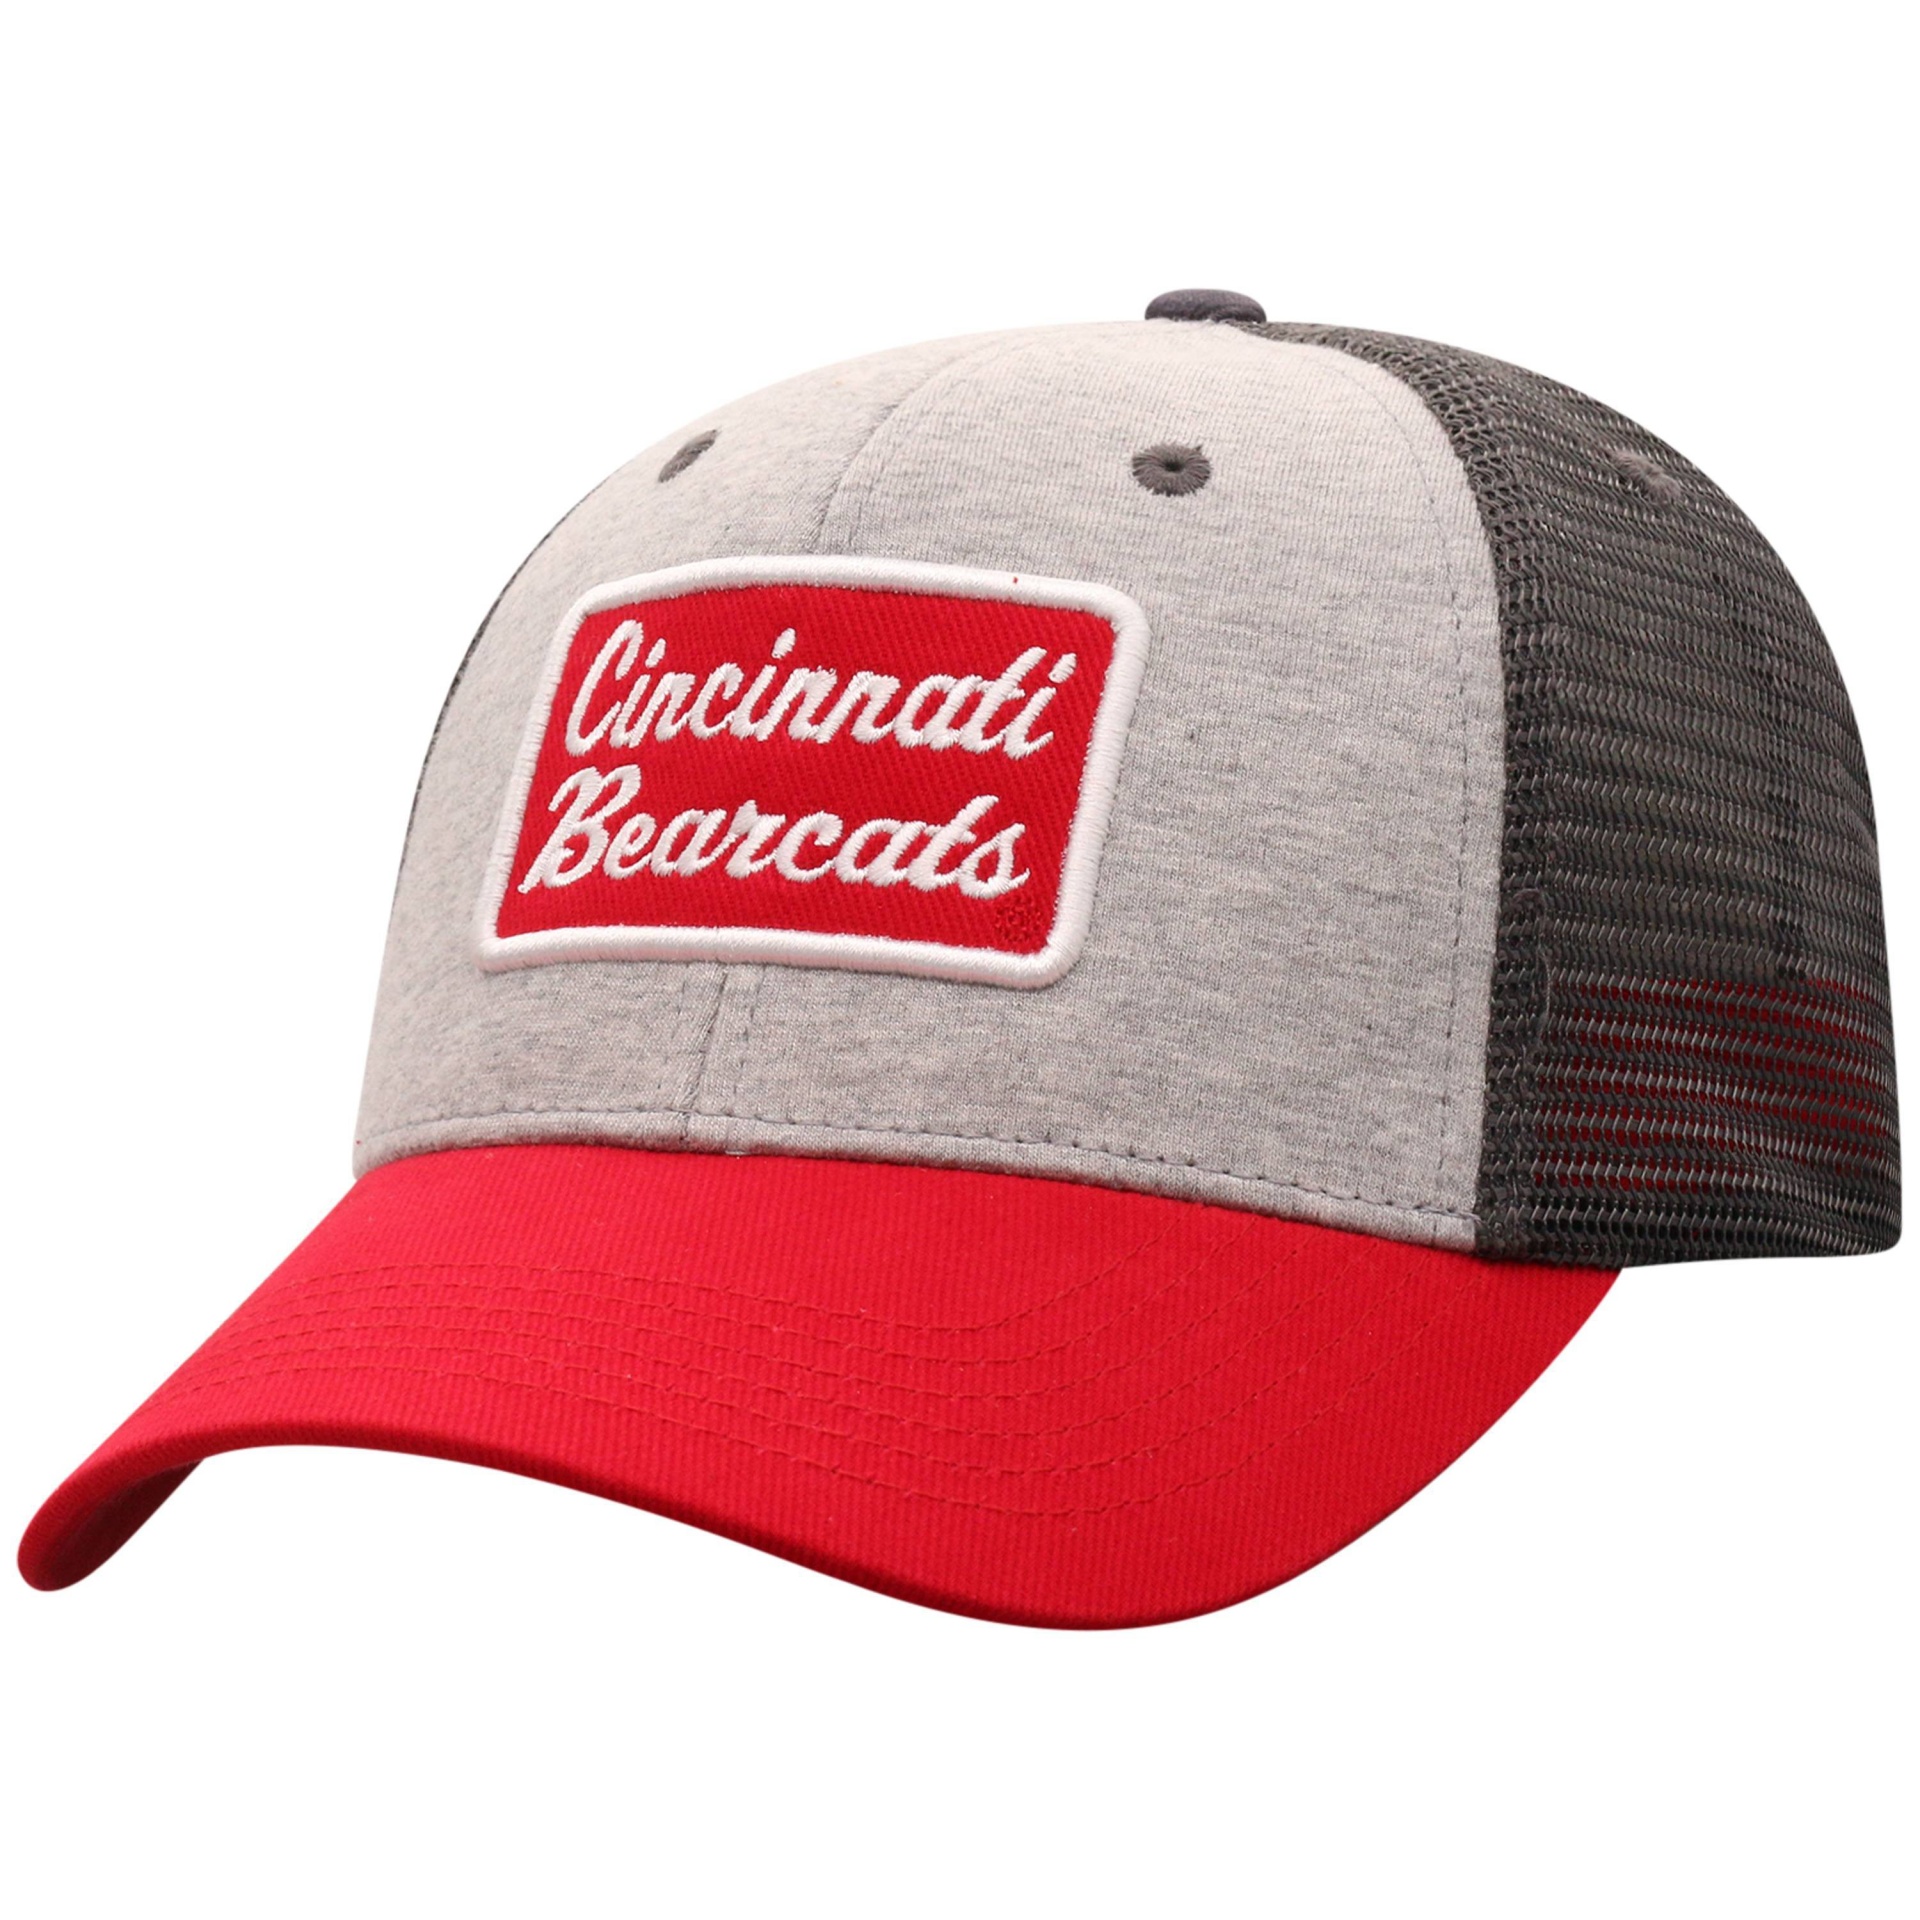 slide 1 of 2, NCAA Cincinnati Bearcats Men's Gray Cotton with Mesh Snapback Hat, 1 ct